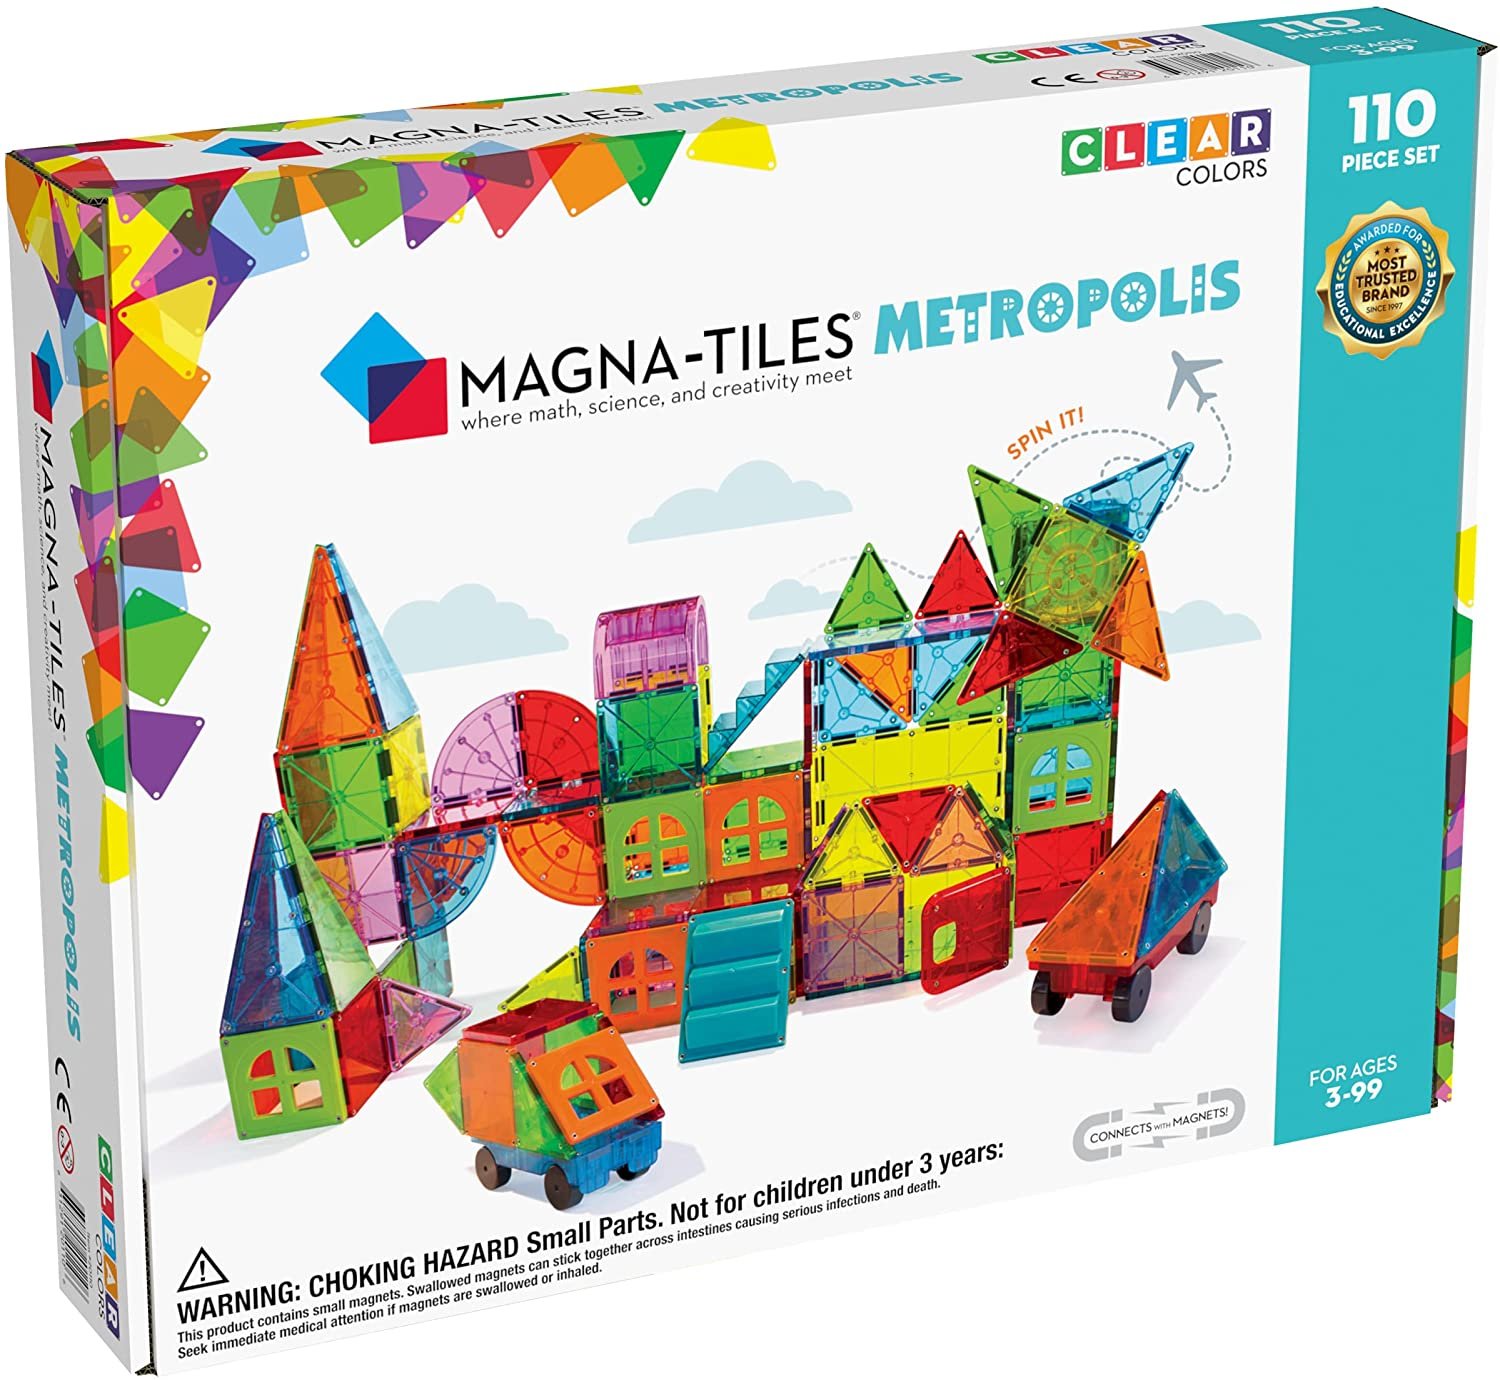 Magna-Tiles Metropolis 110-Piece Magnetic Construction Set